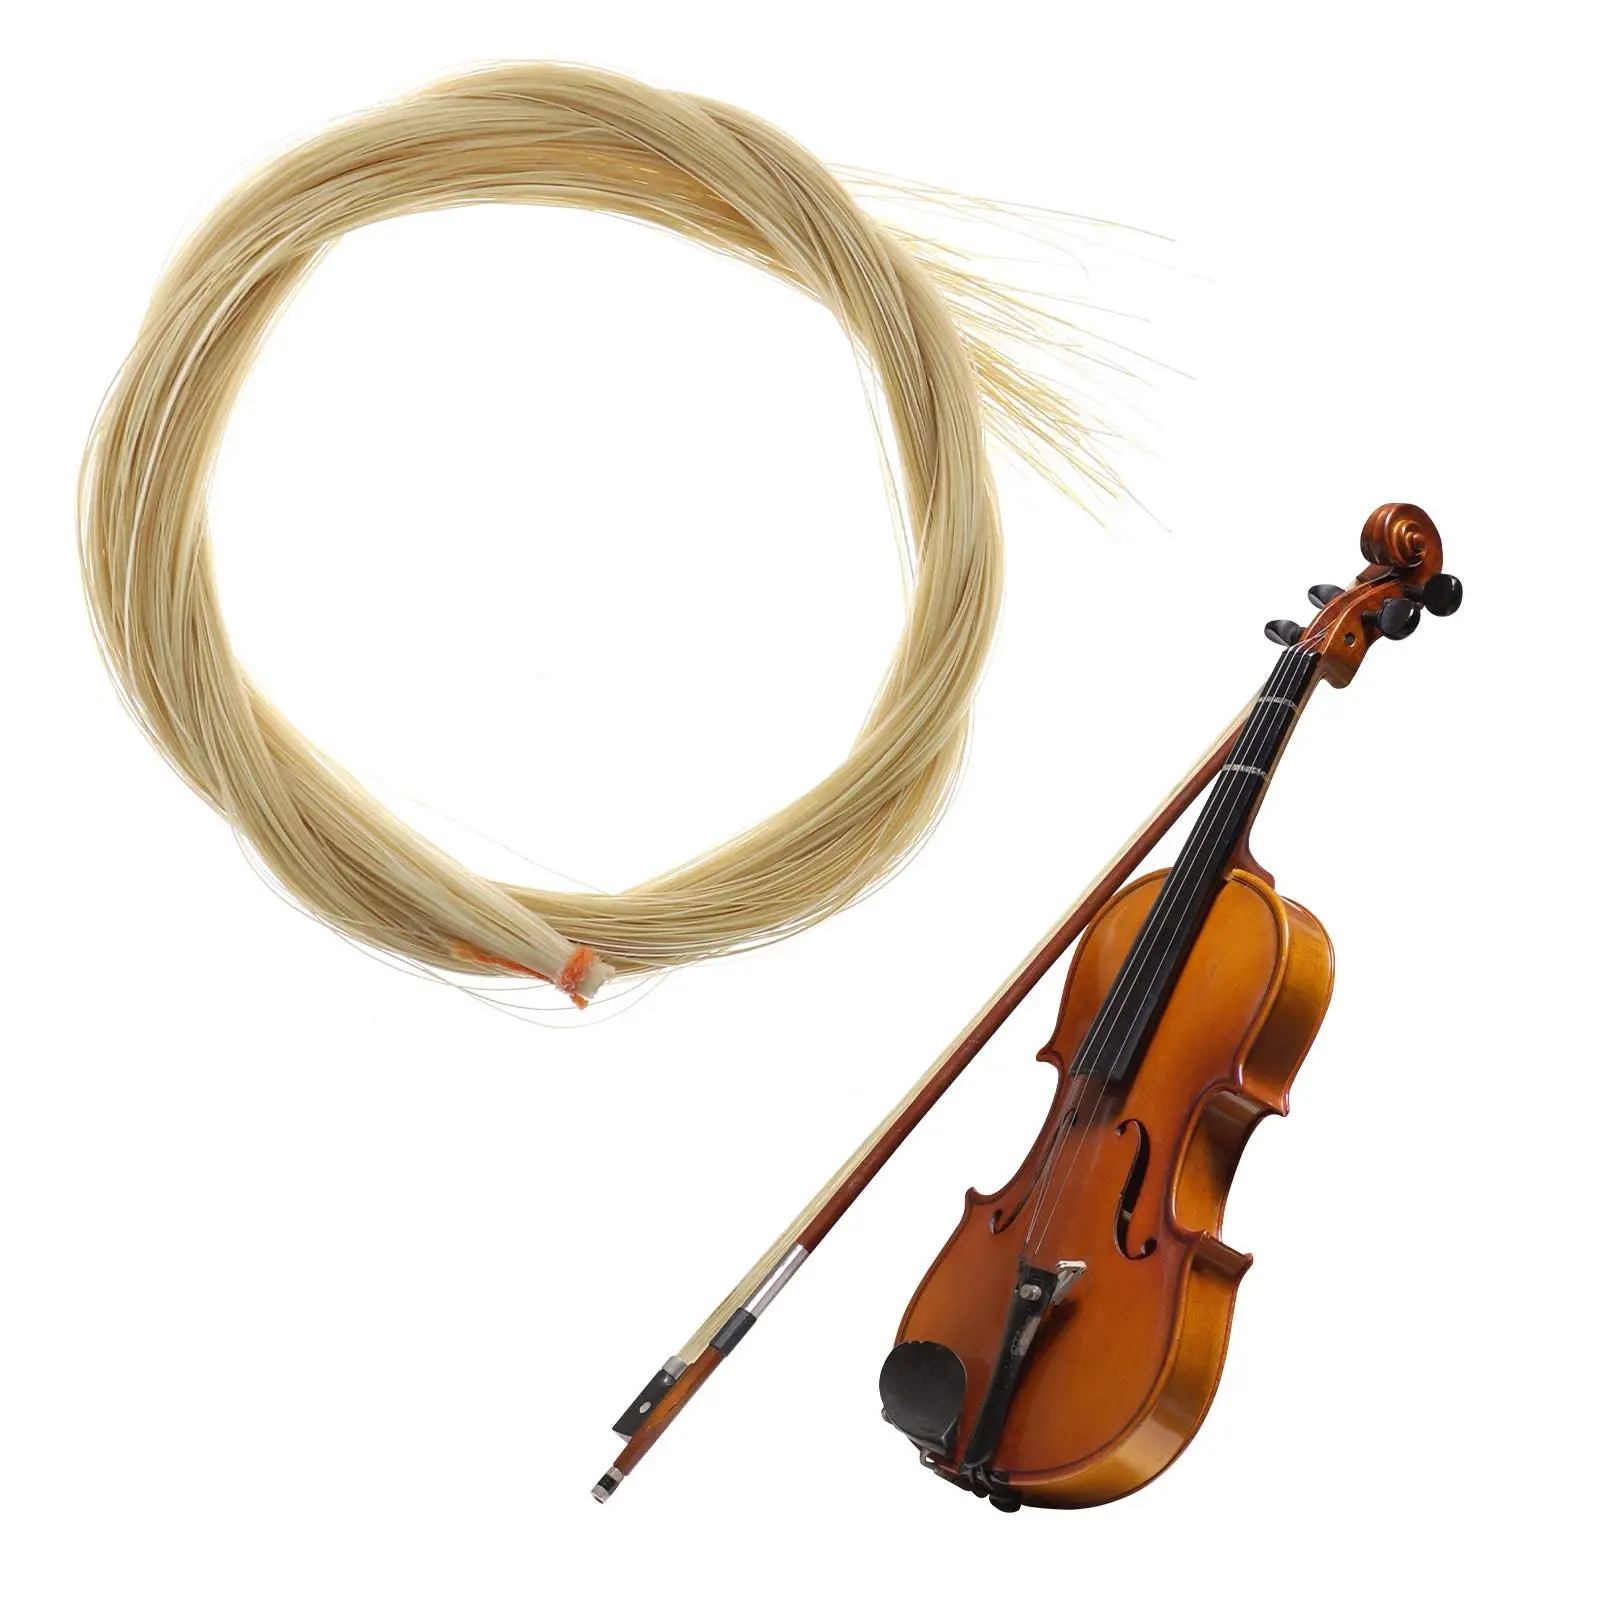 el violin esta hecho con pelo de caballo - Qué está hecho de pelo de caballo